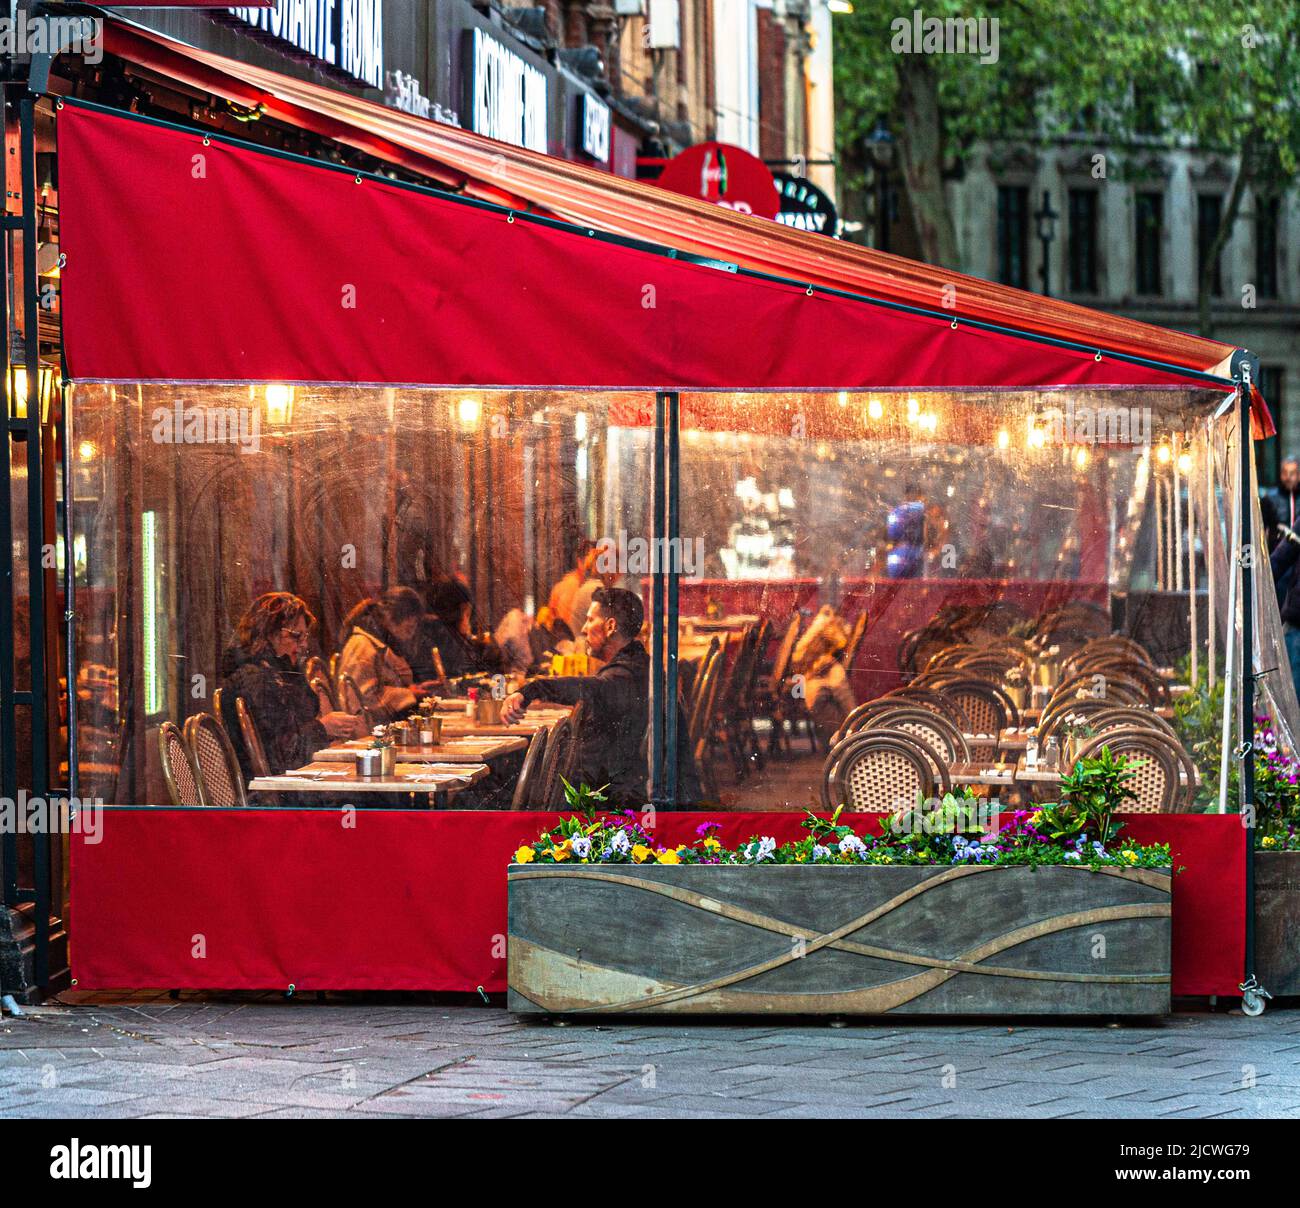 Clienti del ristorante seduti in terrazza sotto tenda in serata piovosa, Londra, Inghilterra, Regno Unito. Foto Stock